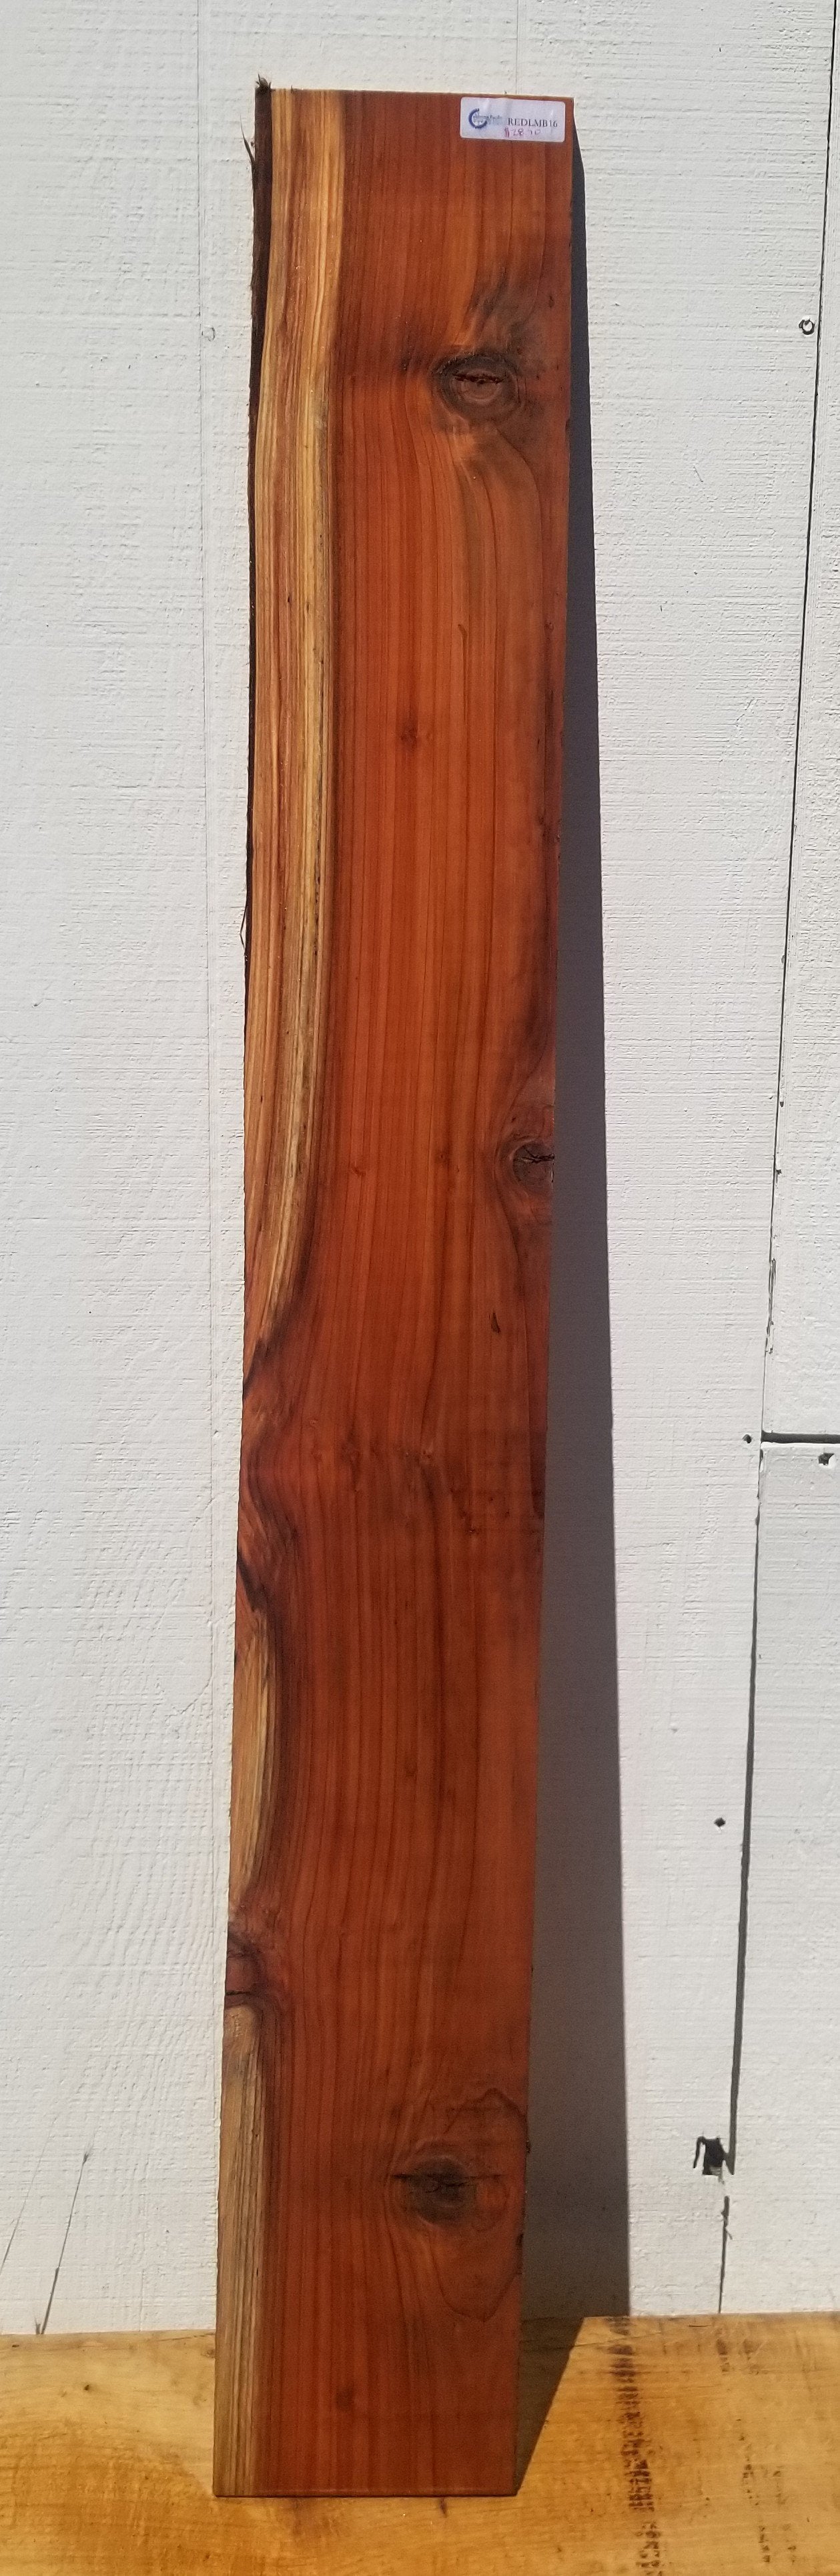 Redwood Board